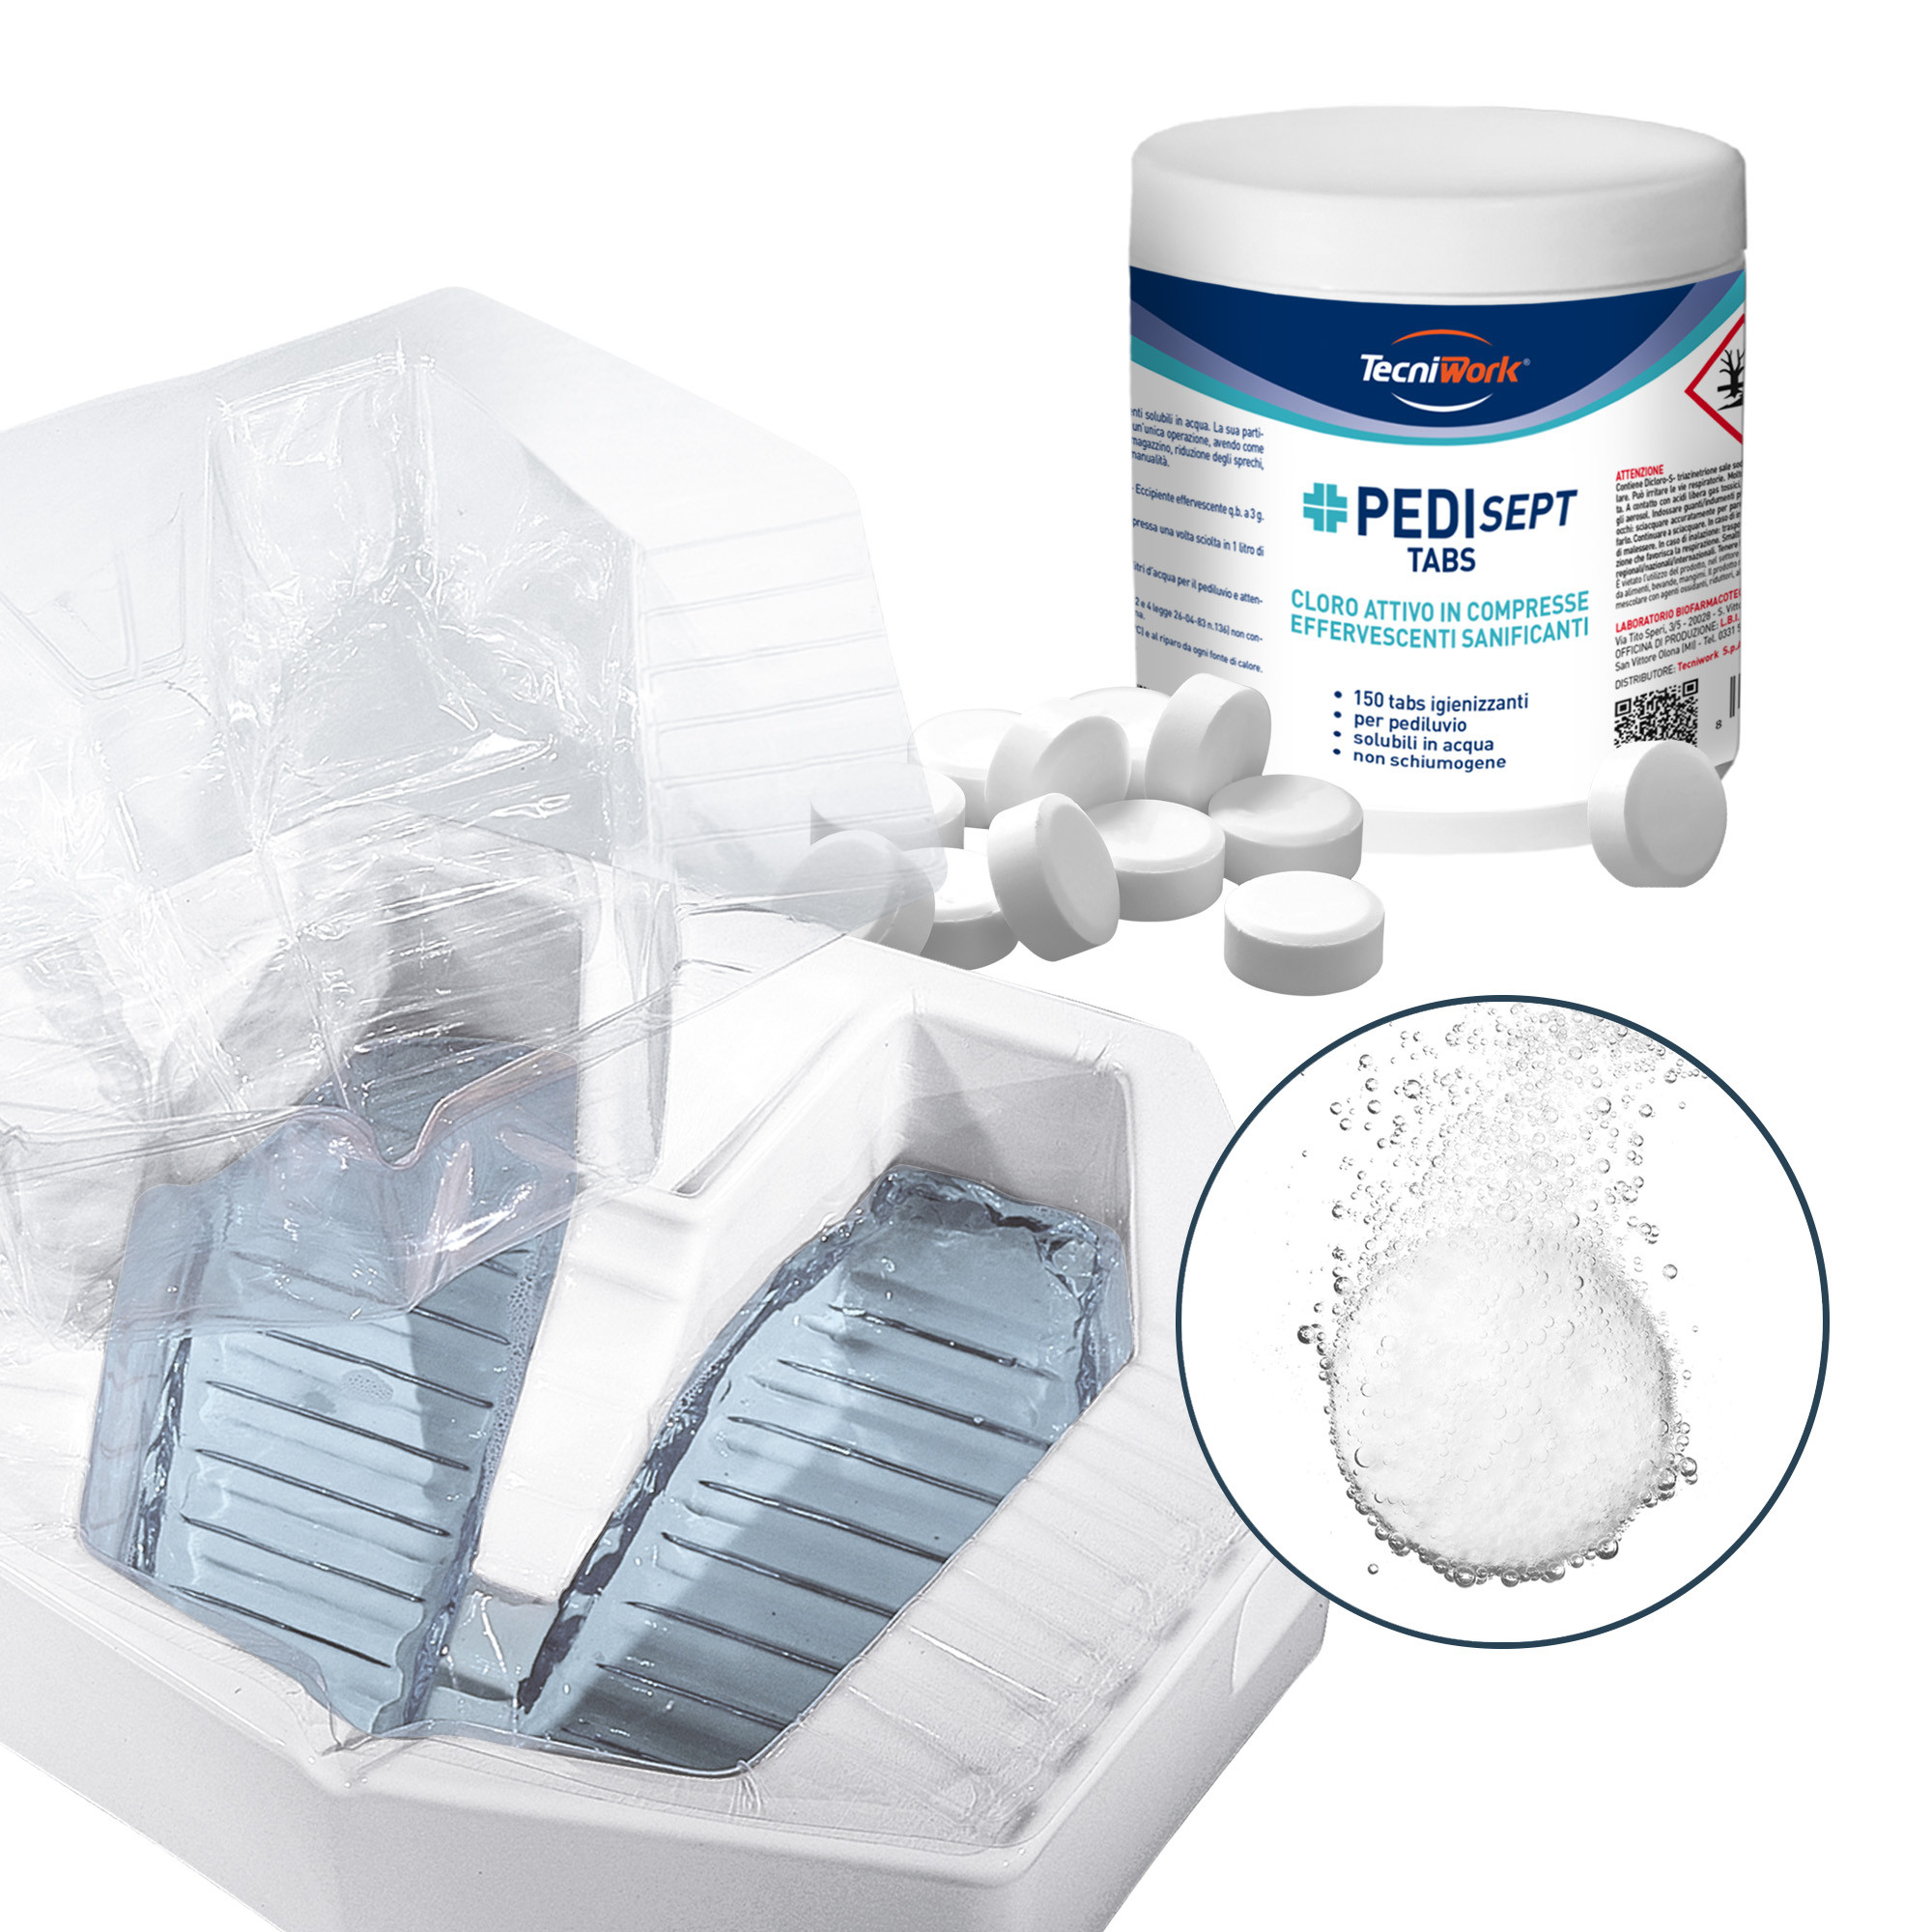 Einzeldosis desinfizierende Fußbad-Tabletten auf Chlorbasis Pedisept Tabs 150 Stück